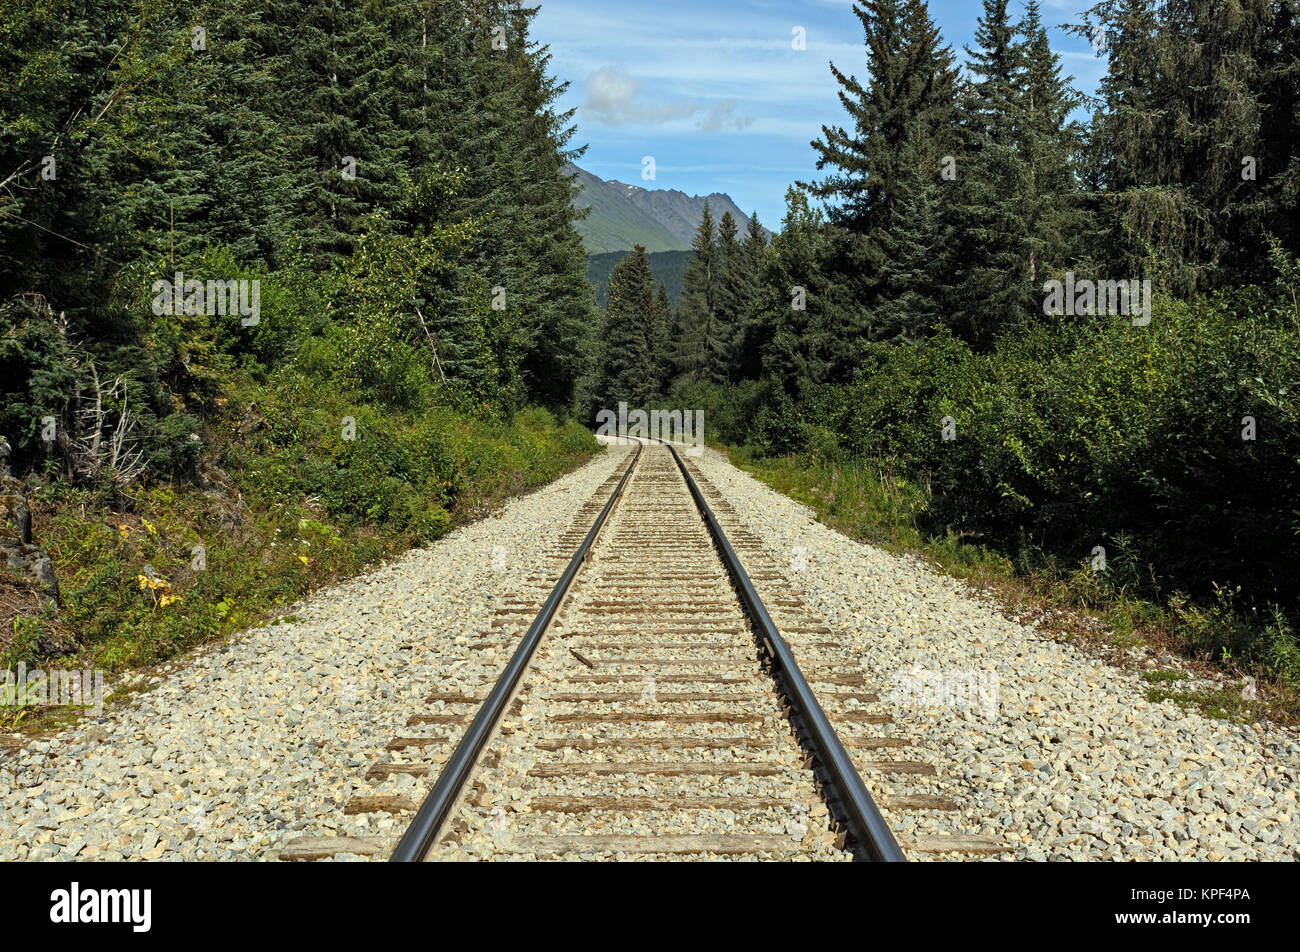 Las vías de ferrocarril en un remoto desierto Foto de stock